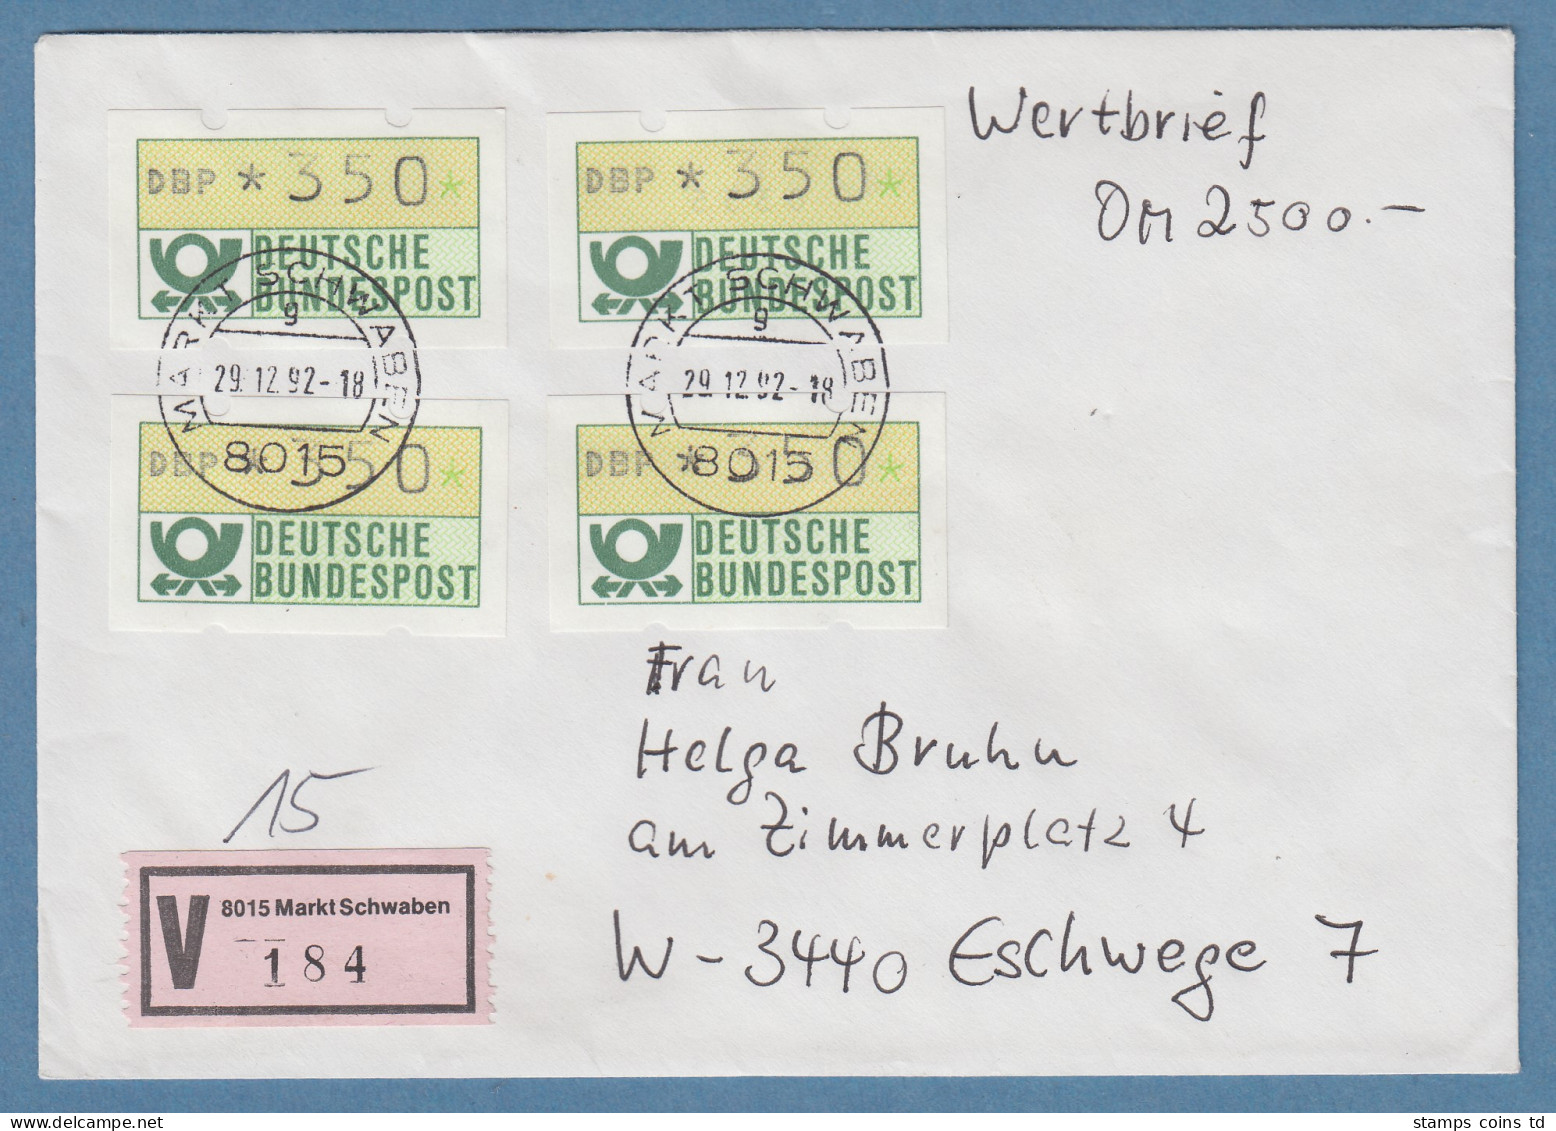 NAGLER-ATM Mi-Nr 1.2 Wert 350Pfg 4x Als MEF Auf Wertbrief über 2500,- DM, 1992 - Viñetas De Franqueo [ATM]